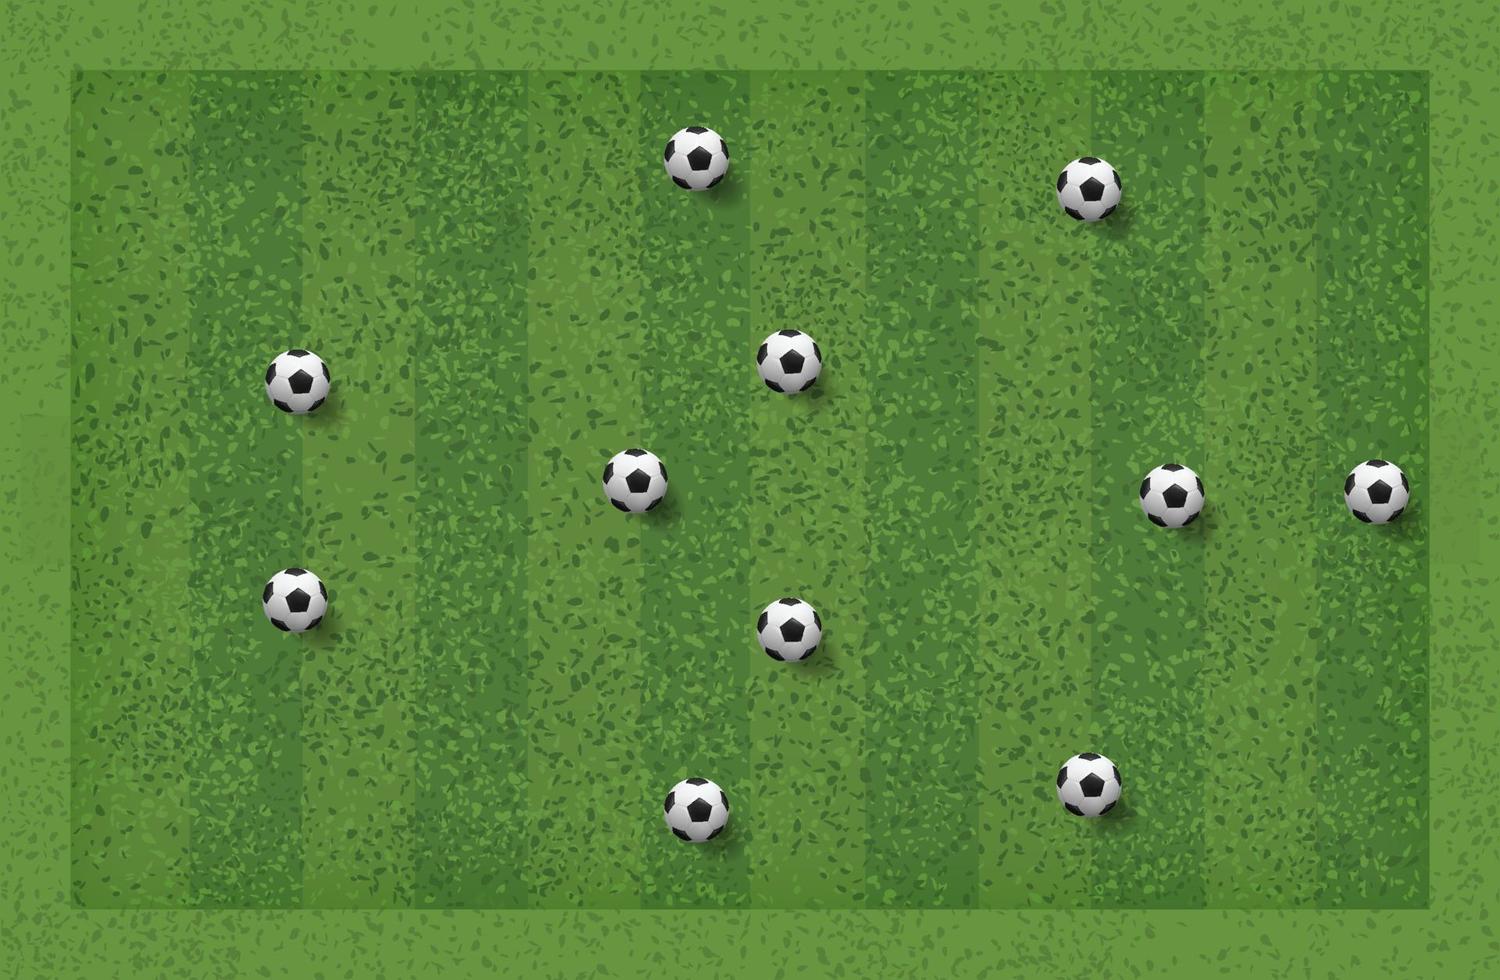 3-5-2 voetbalspel tactiek. lay-out positie voor coach. vector. vector